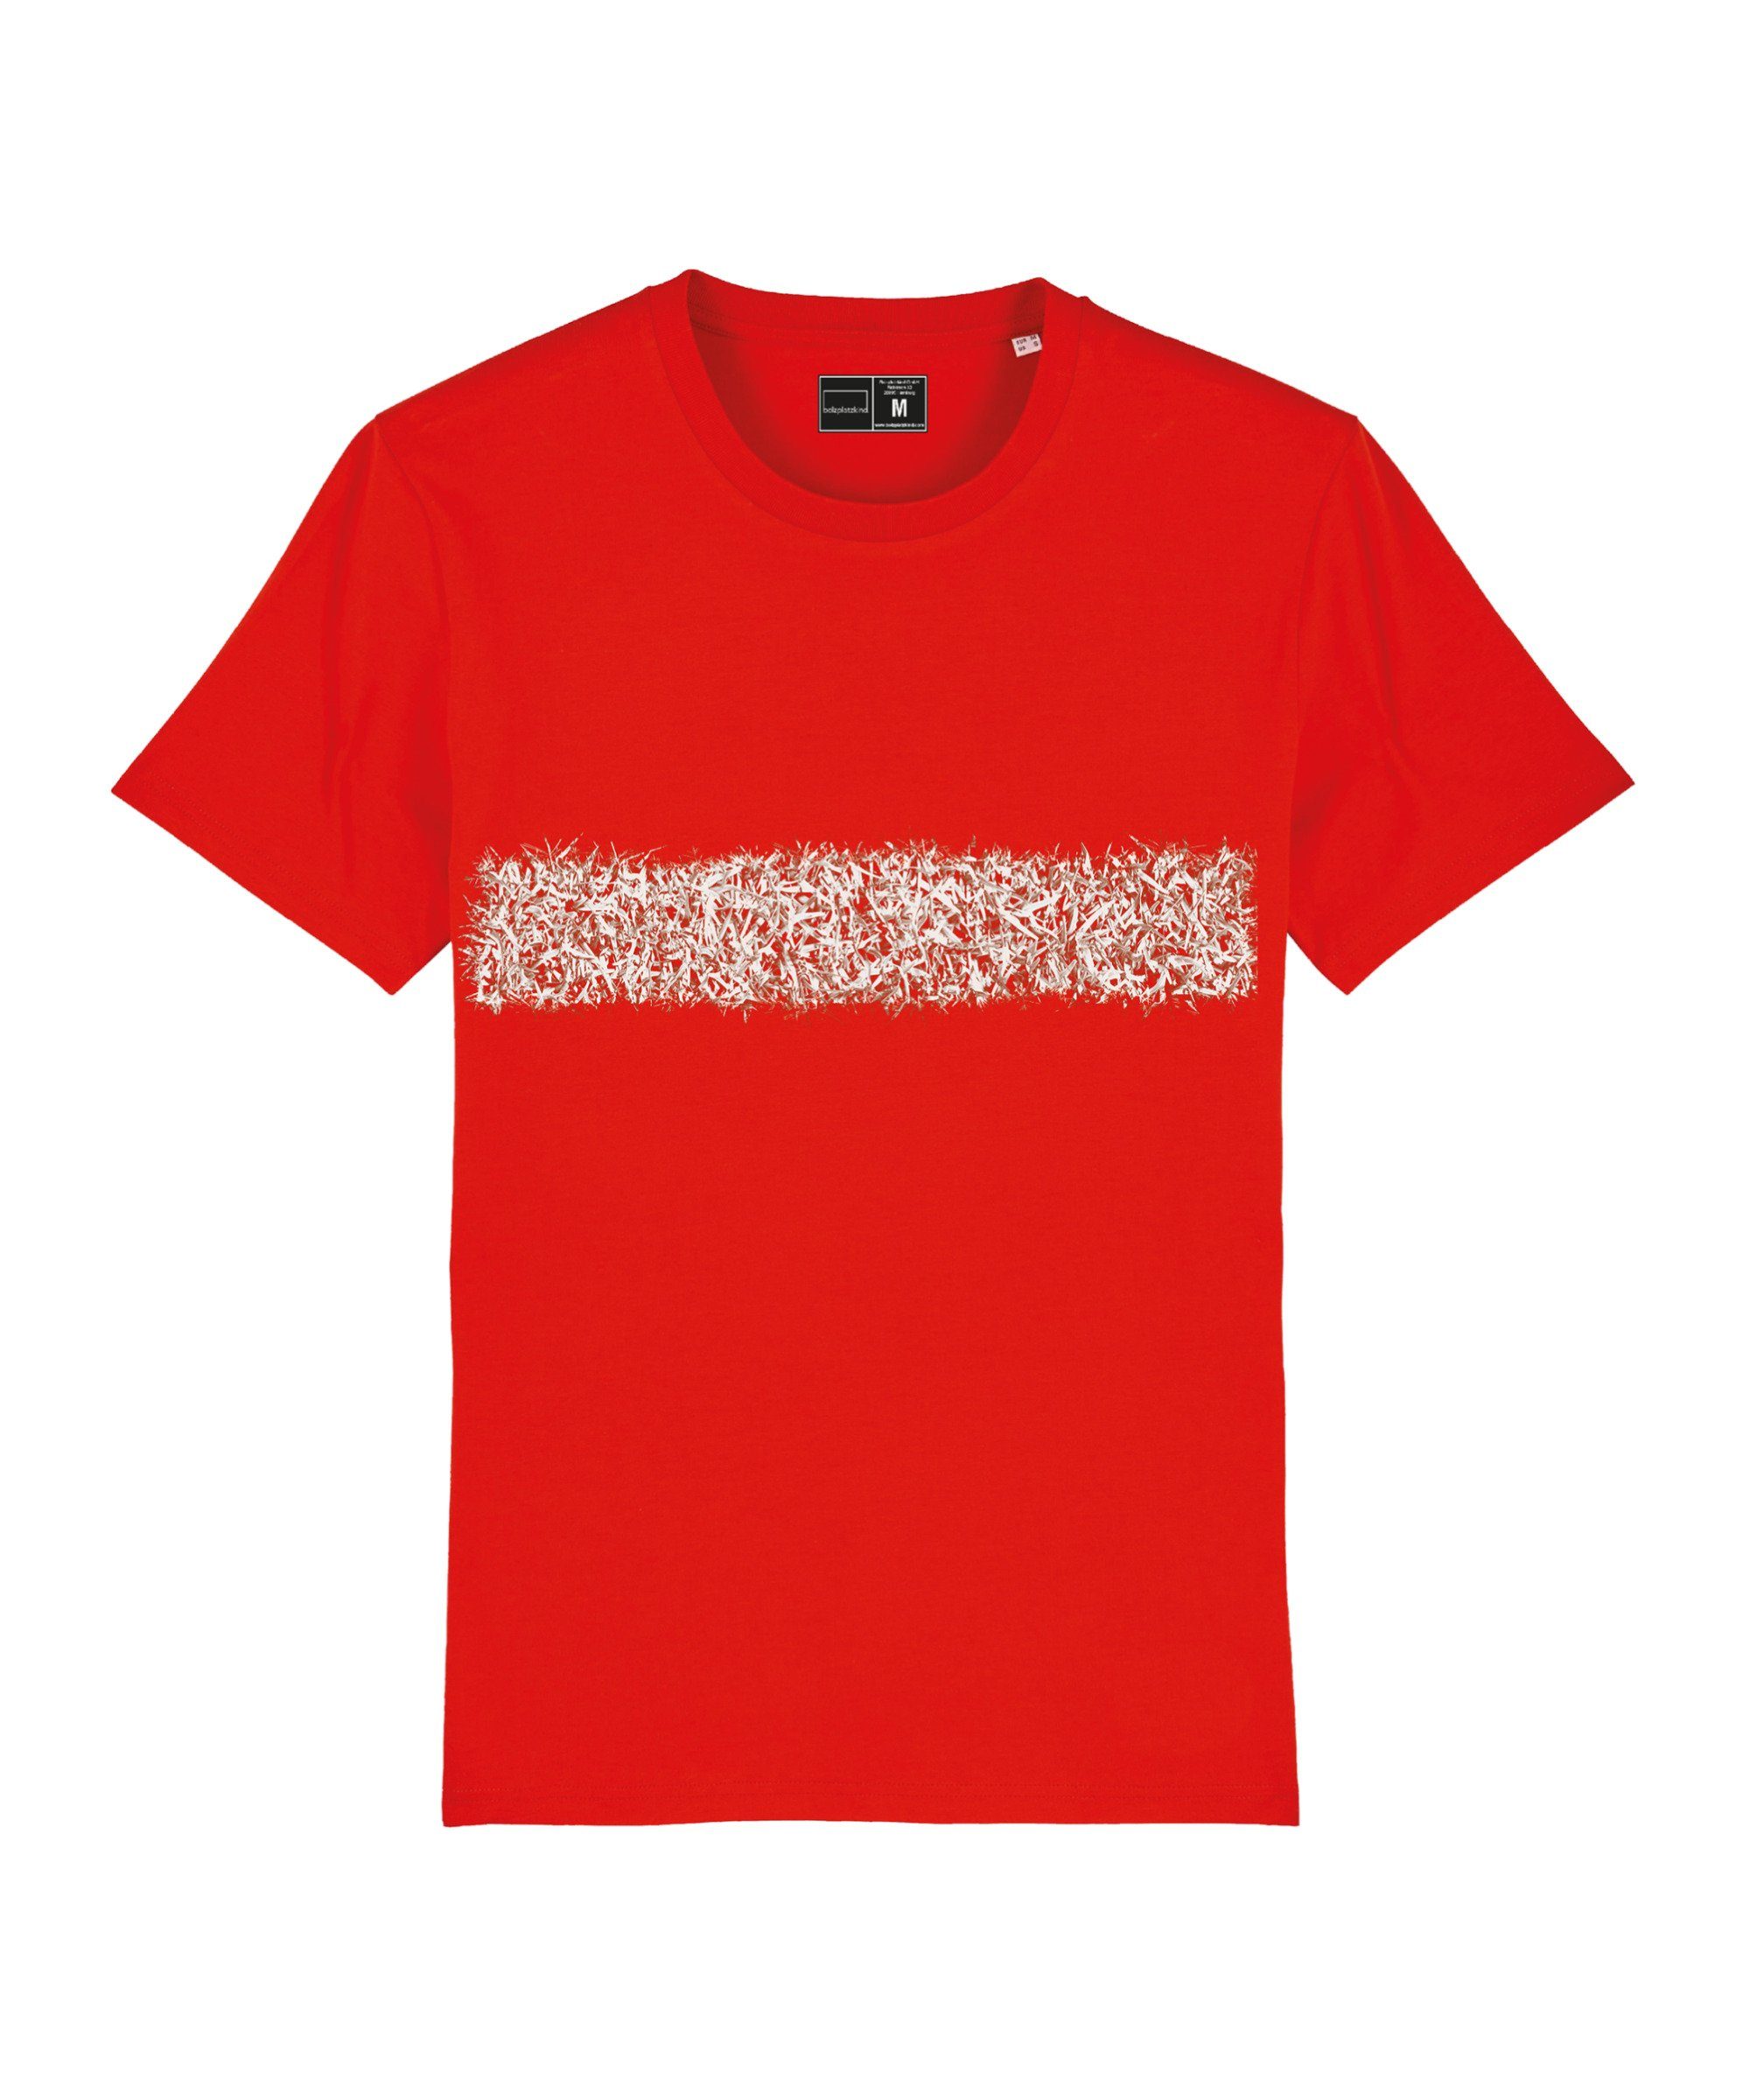 Nachhaltiges Bolzplatzkind "Line-Up" T-Shirt Produkt T-Shirt rot